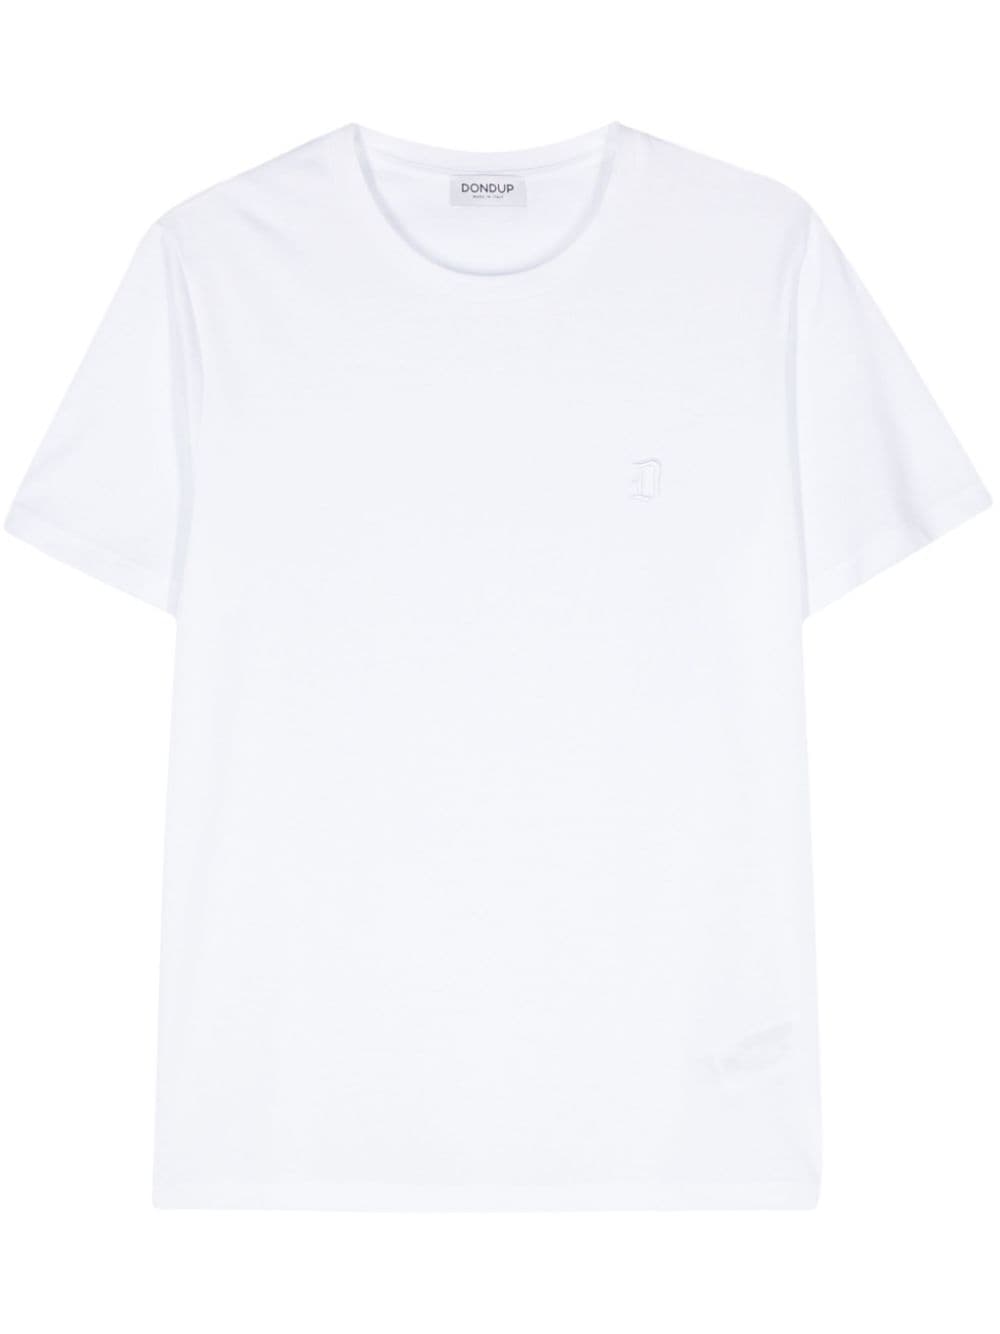 Regular cotton jersey t-shirt